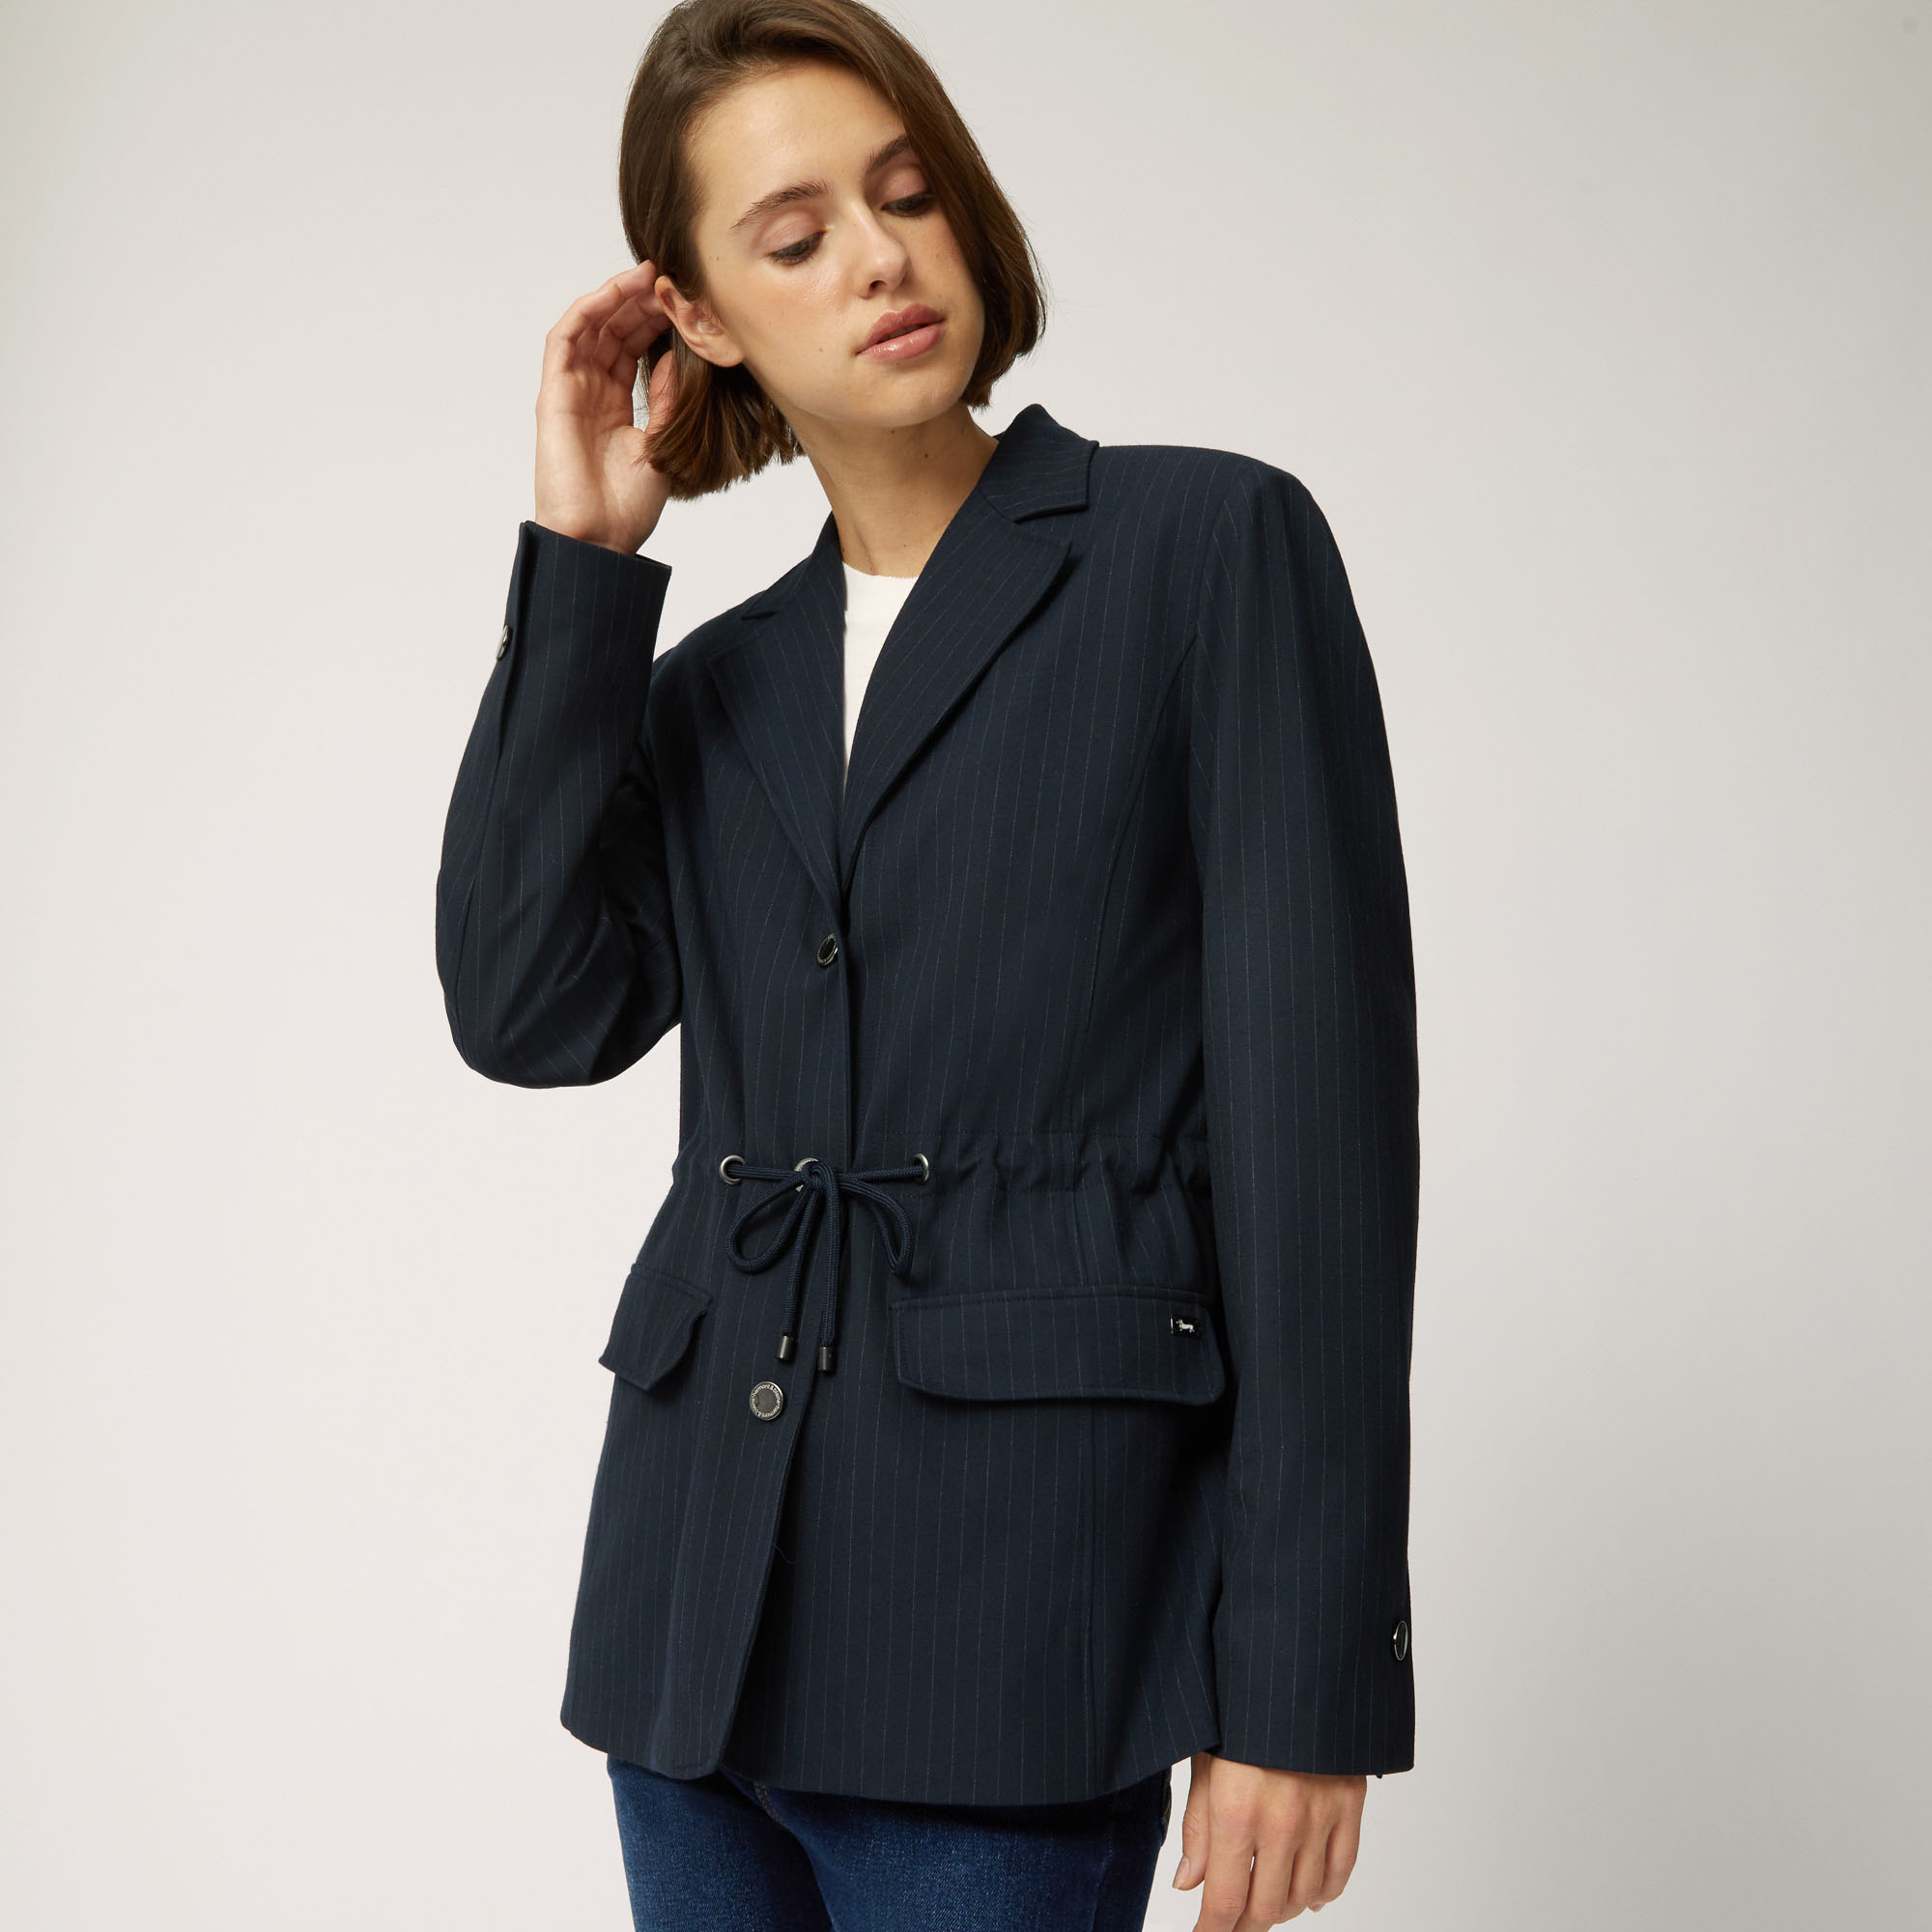 Cardigan-Style Jacket With Drawstring, Blue, large image number 2